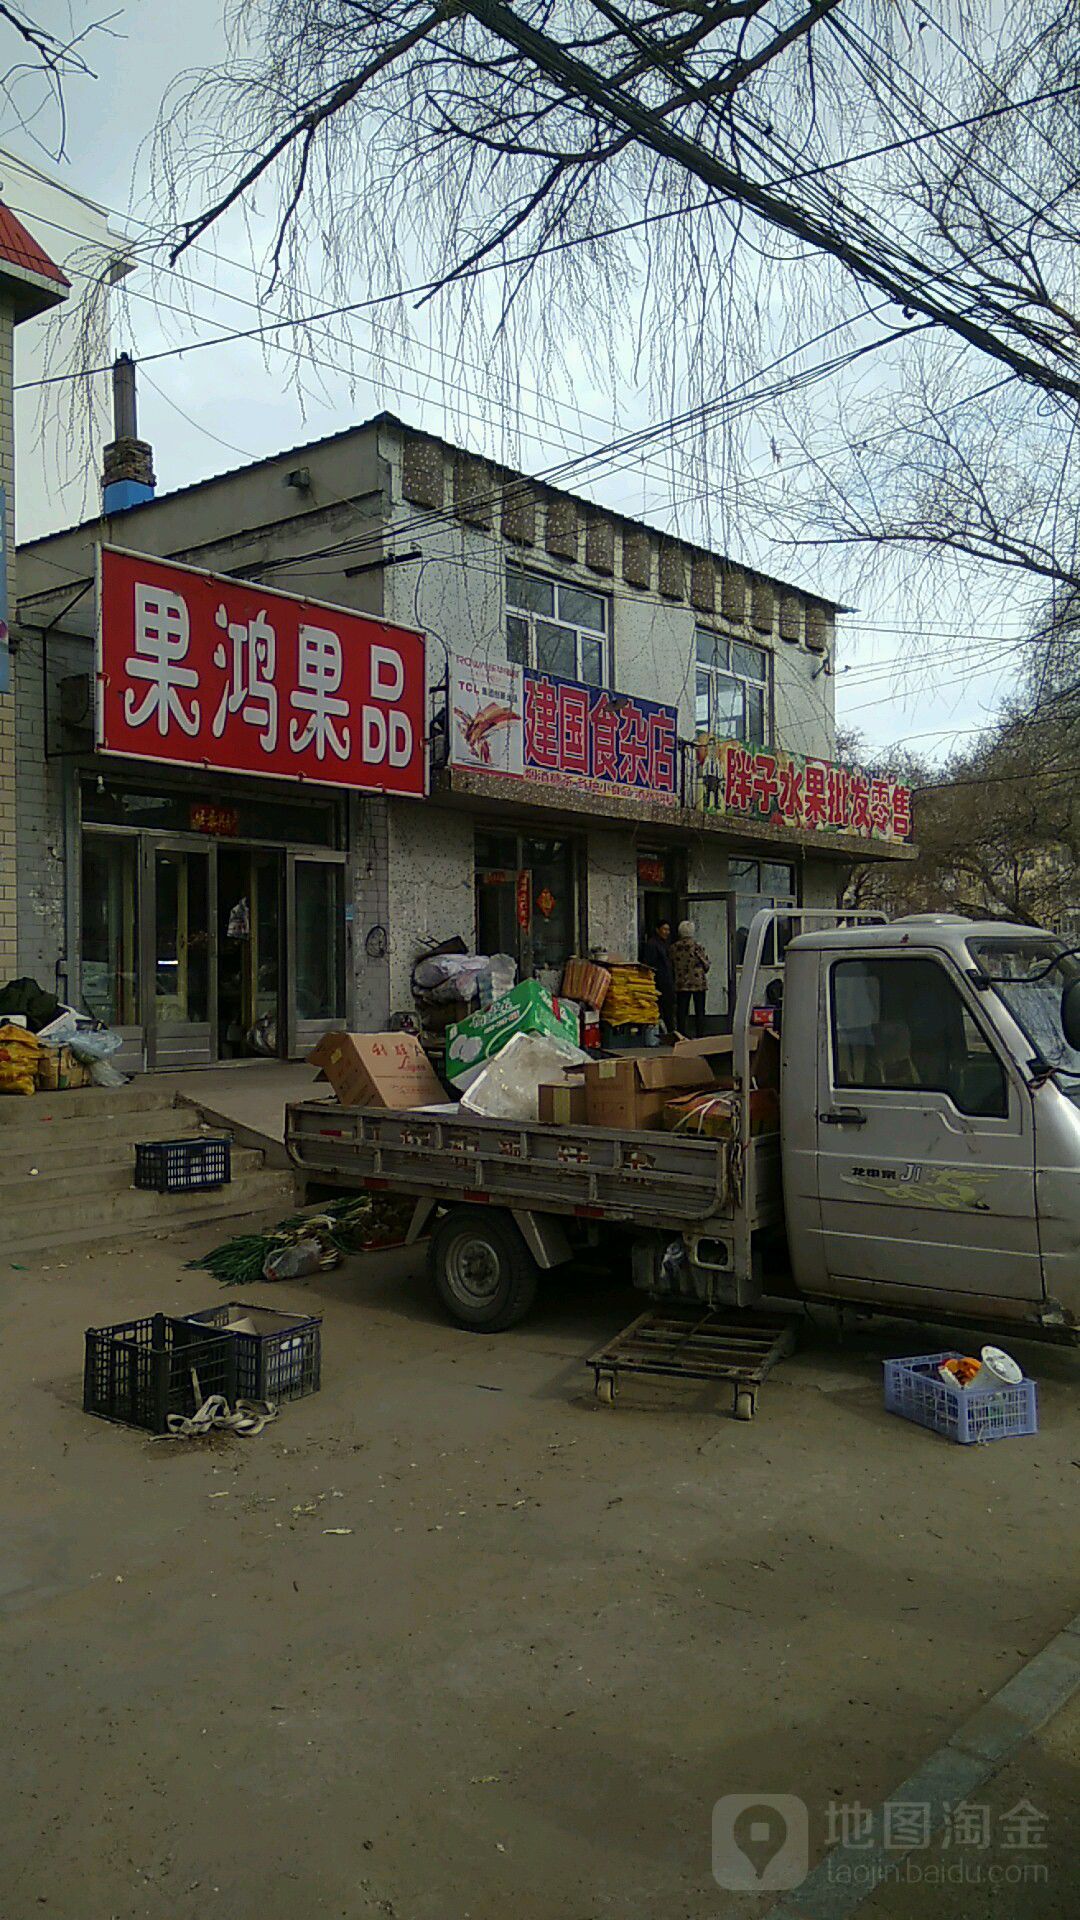 建國食雜店